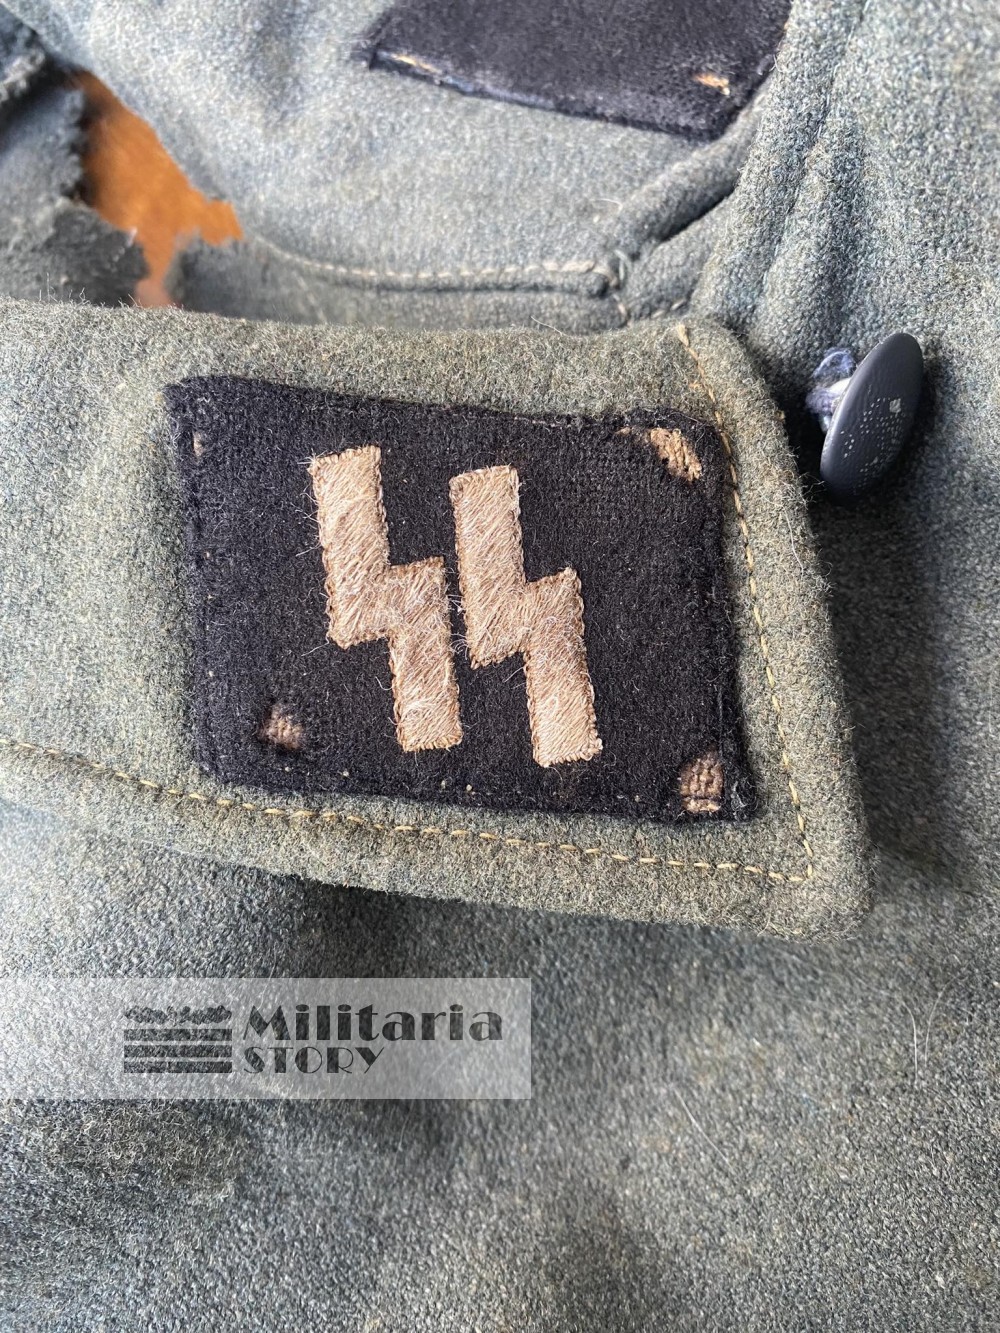 M44 Waffen SS tunic - M44 Waffen SS tunic: Vintage German Uniforms